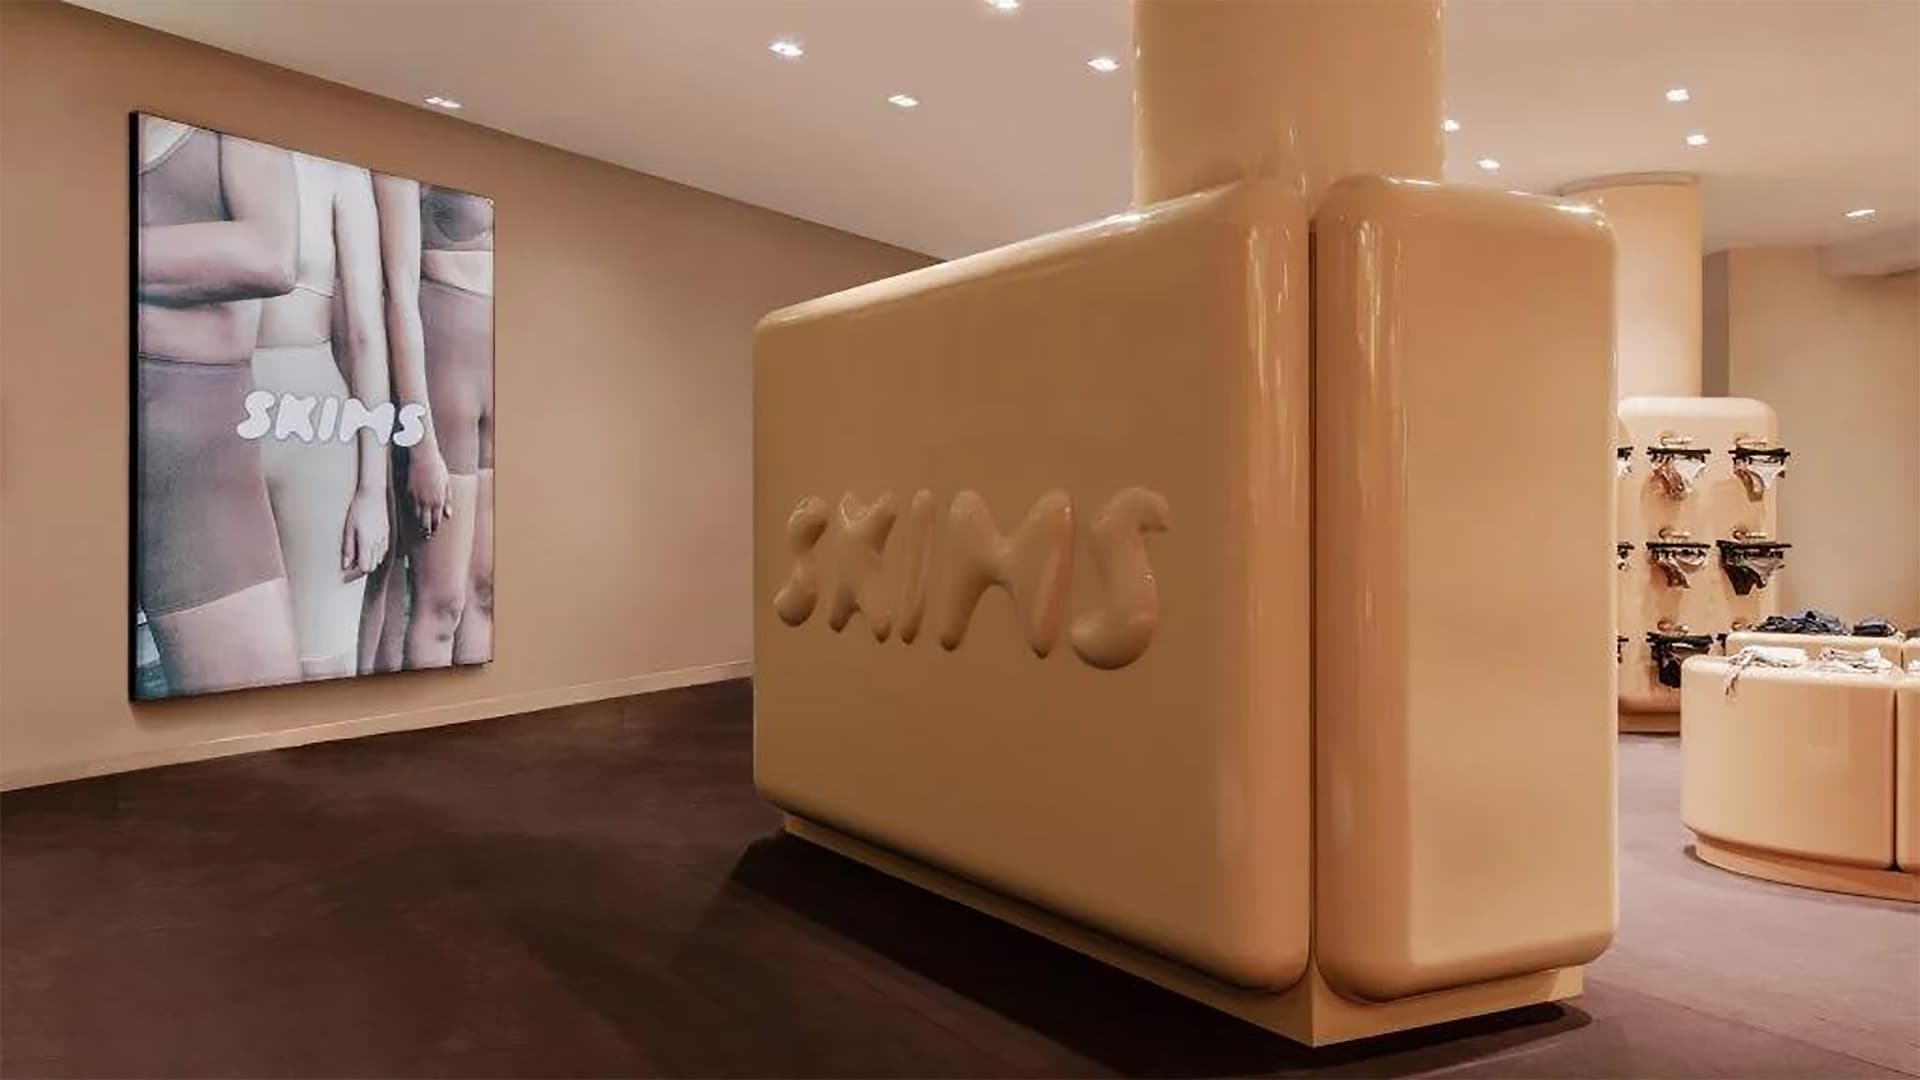 Глянцевый интерьер для магазина SKIMS в Париже – проект Вилло Перрона